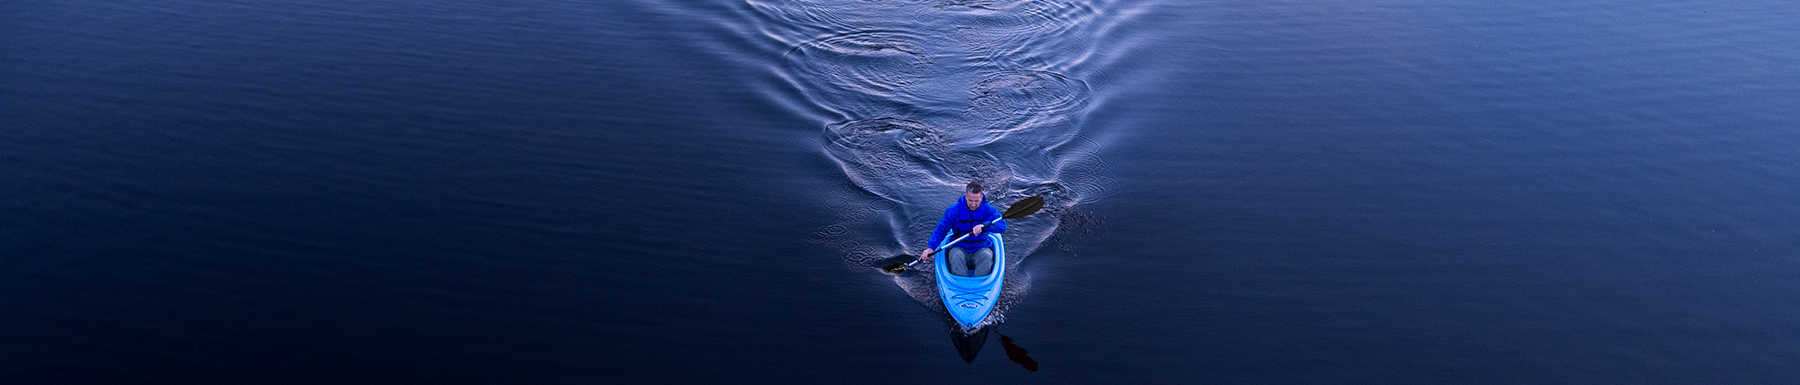 Hombre en kayak azul remando